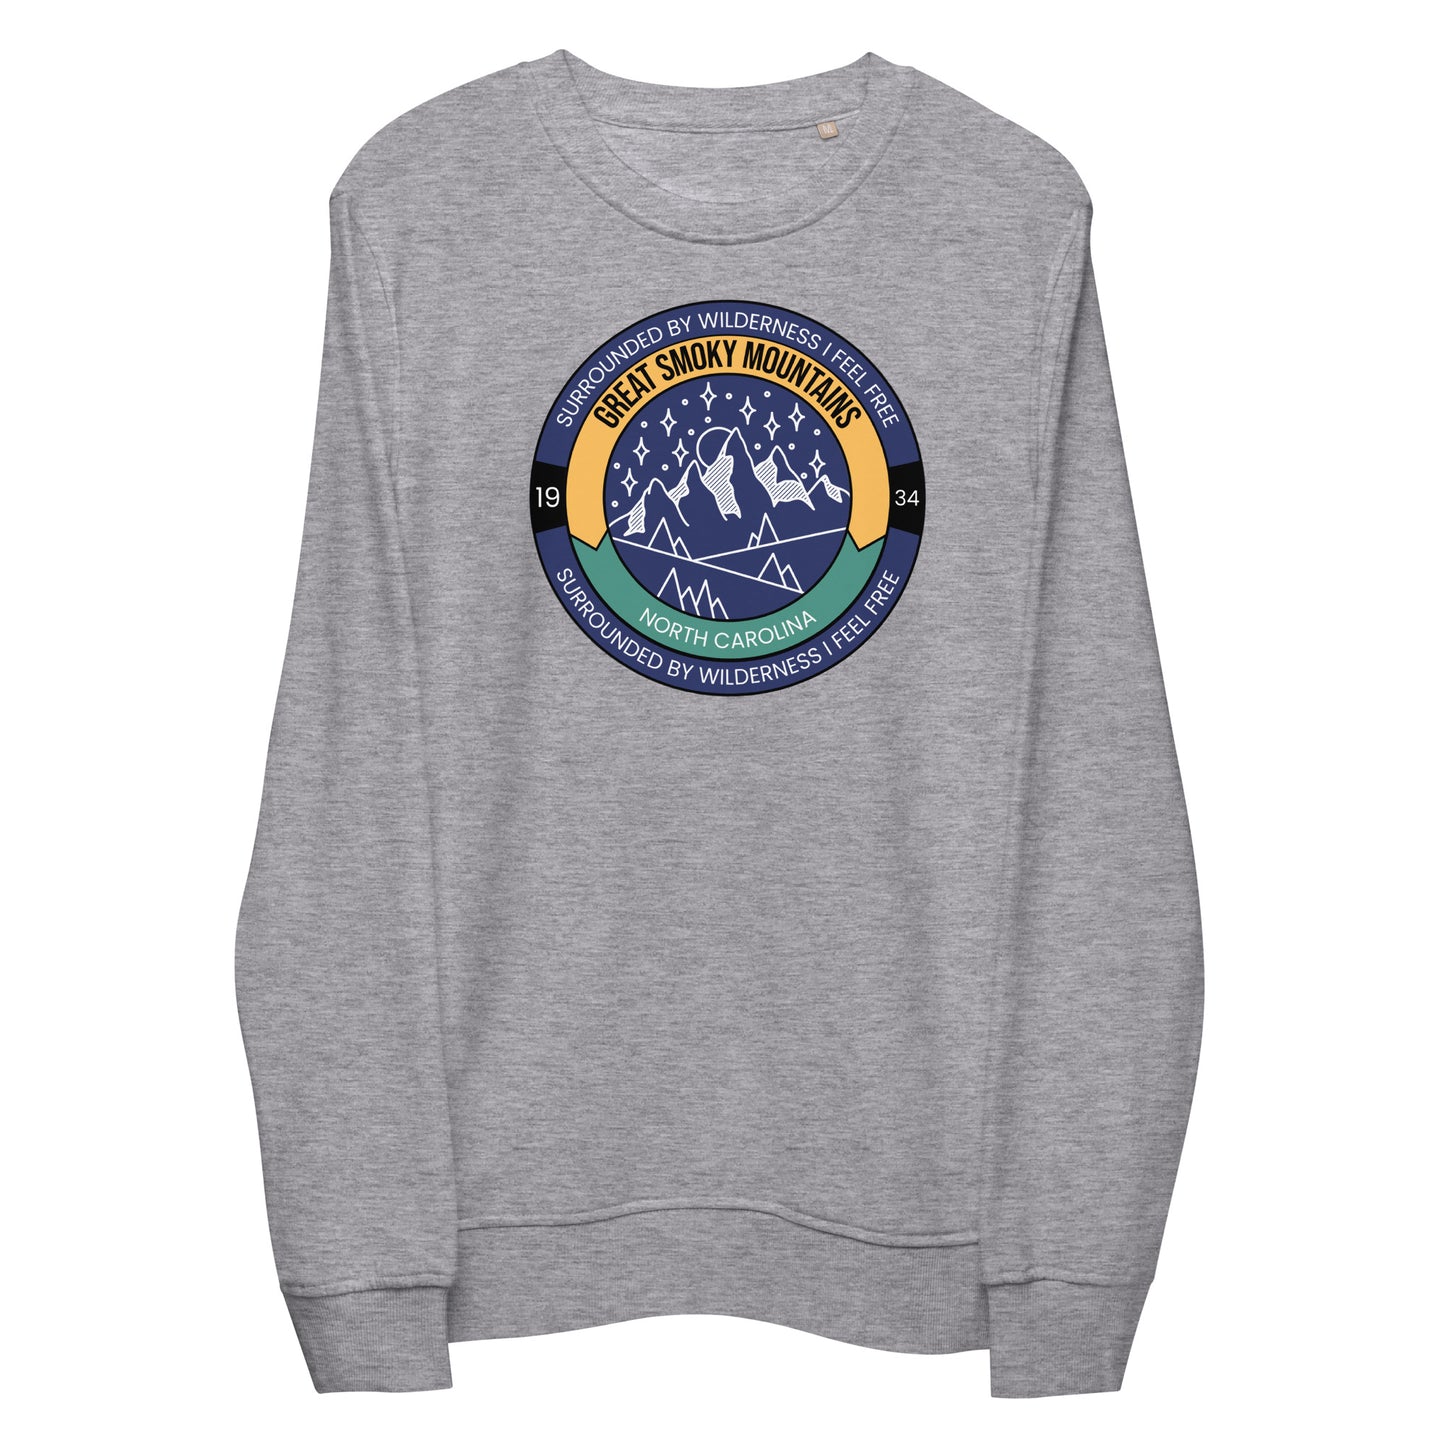 Great Smoky Mt. - Unisex organic sweatshirt